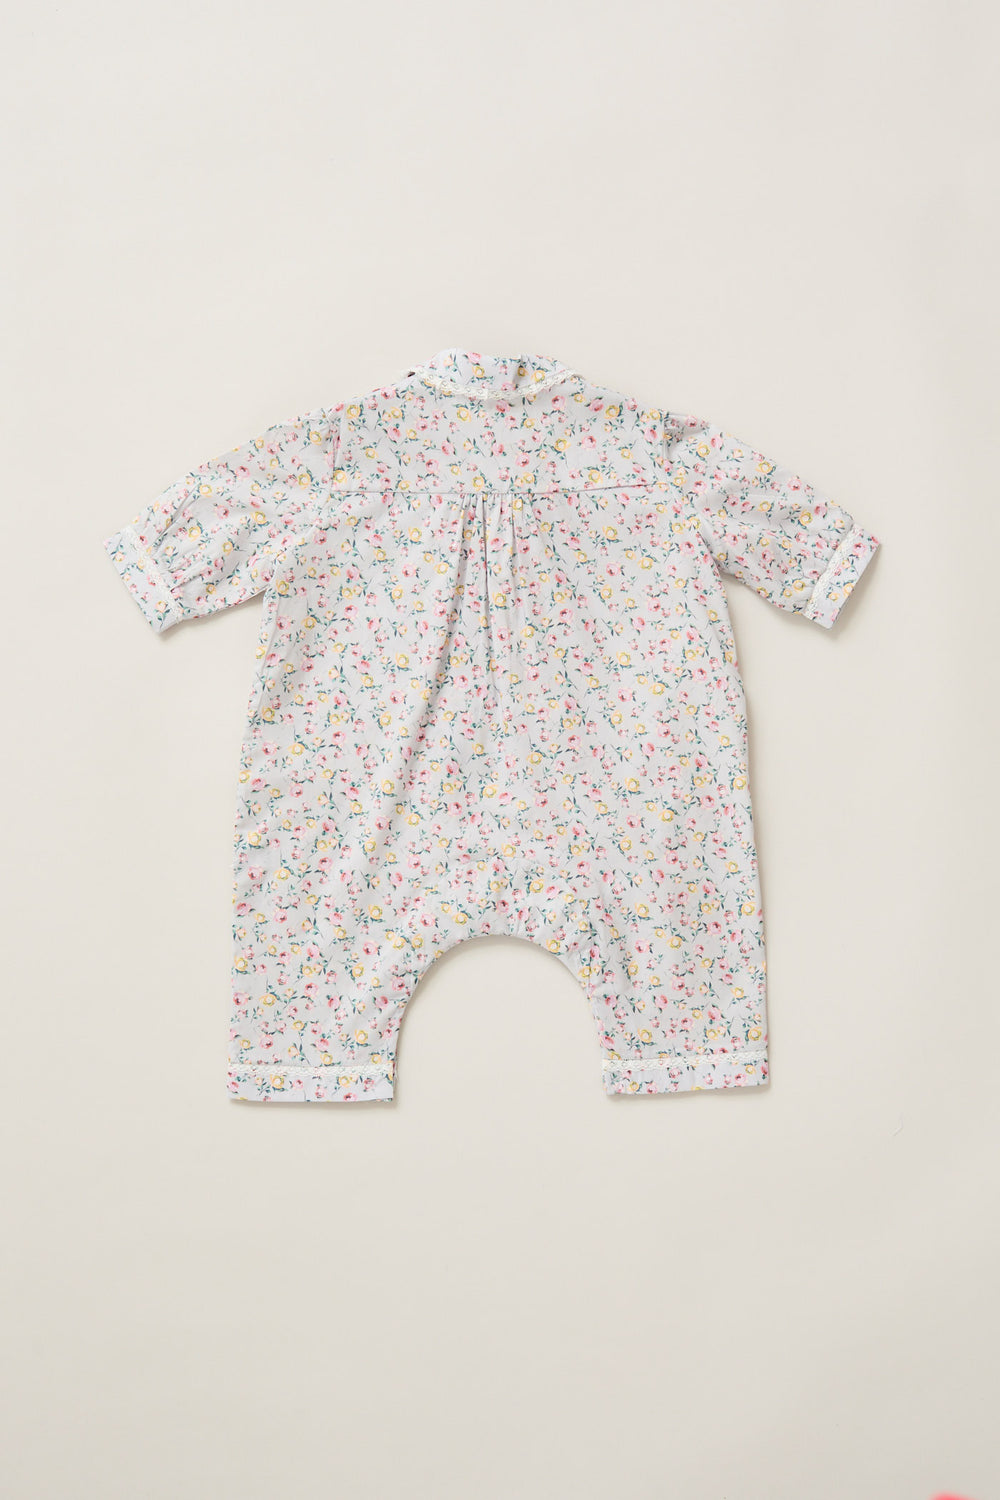 Baby Pyjama in Lavender Rose Liberty Print